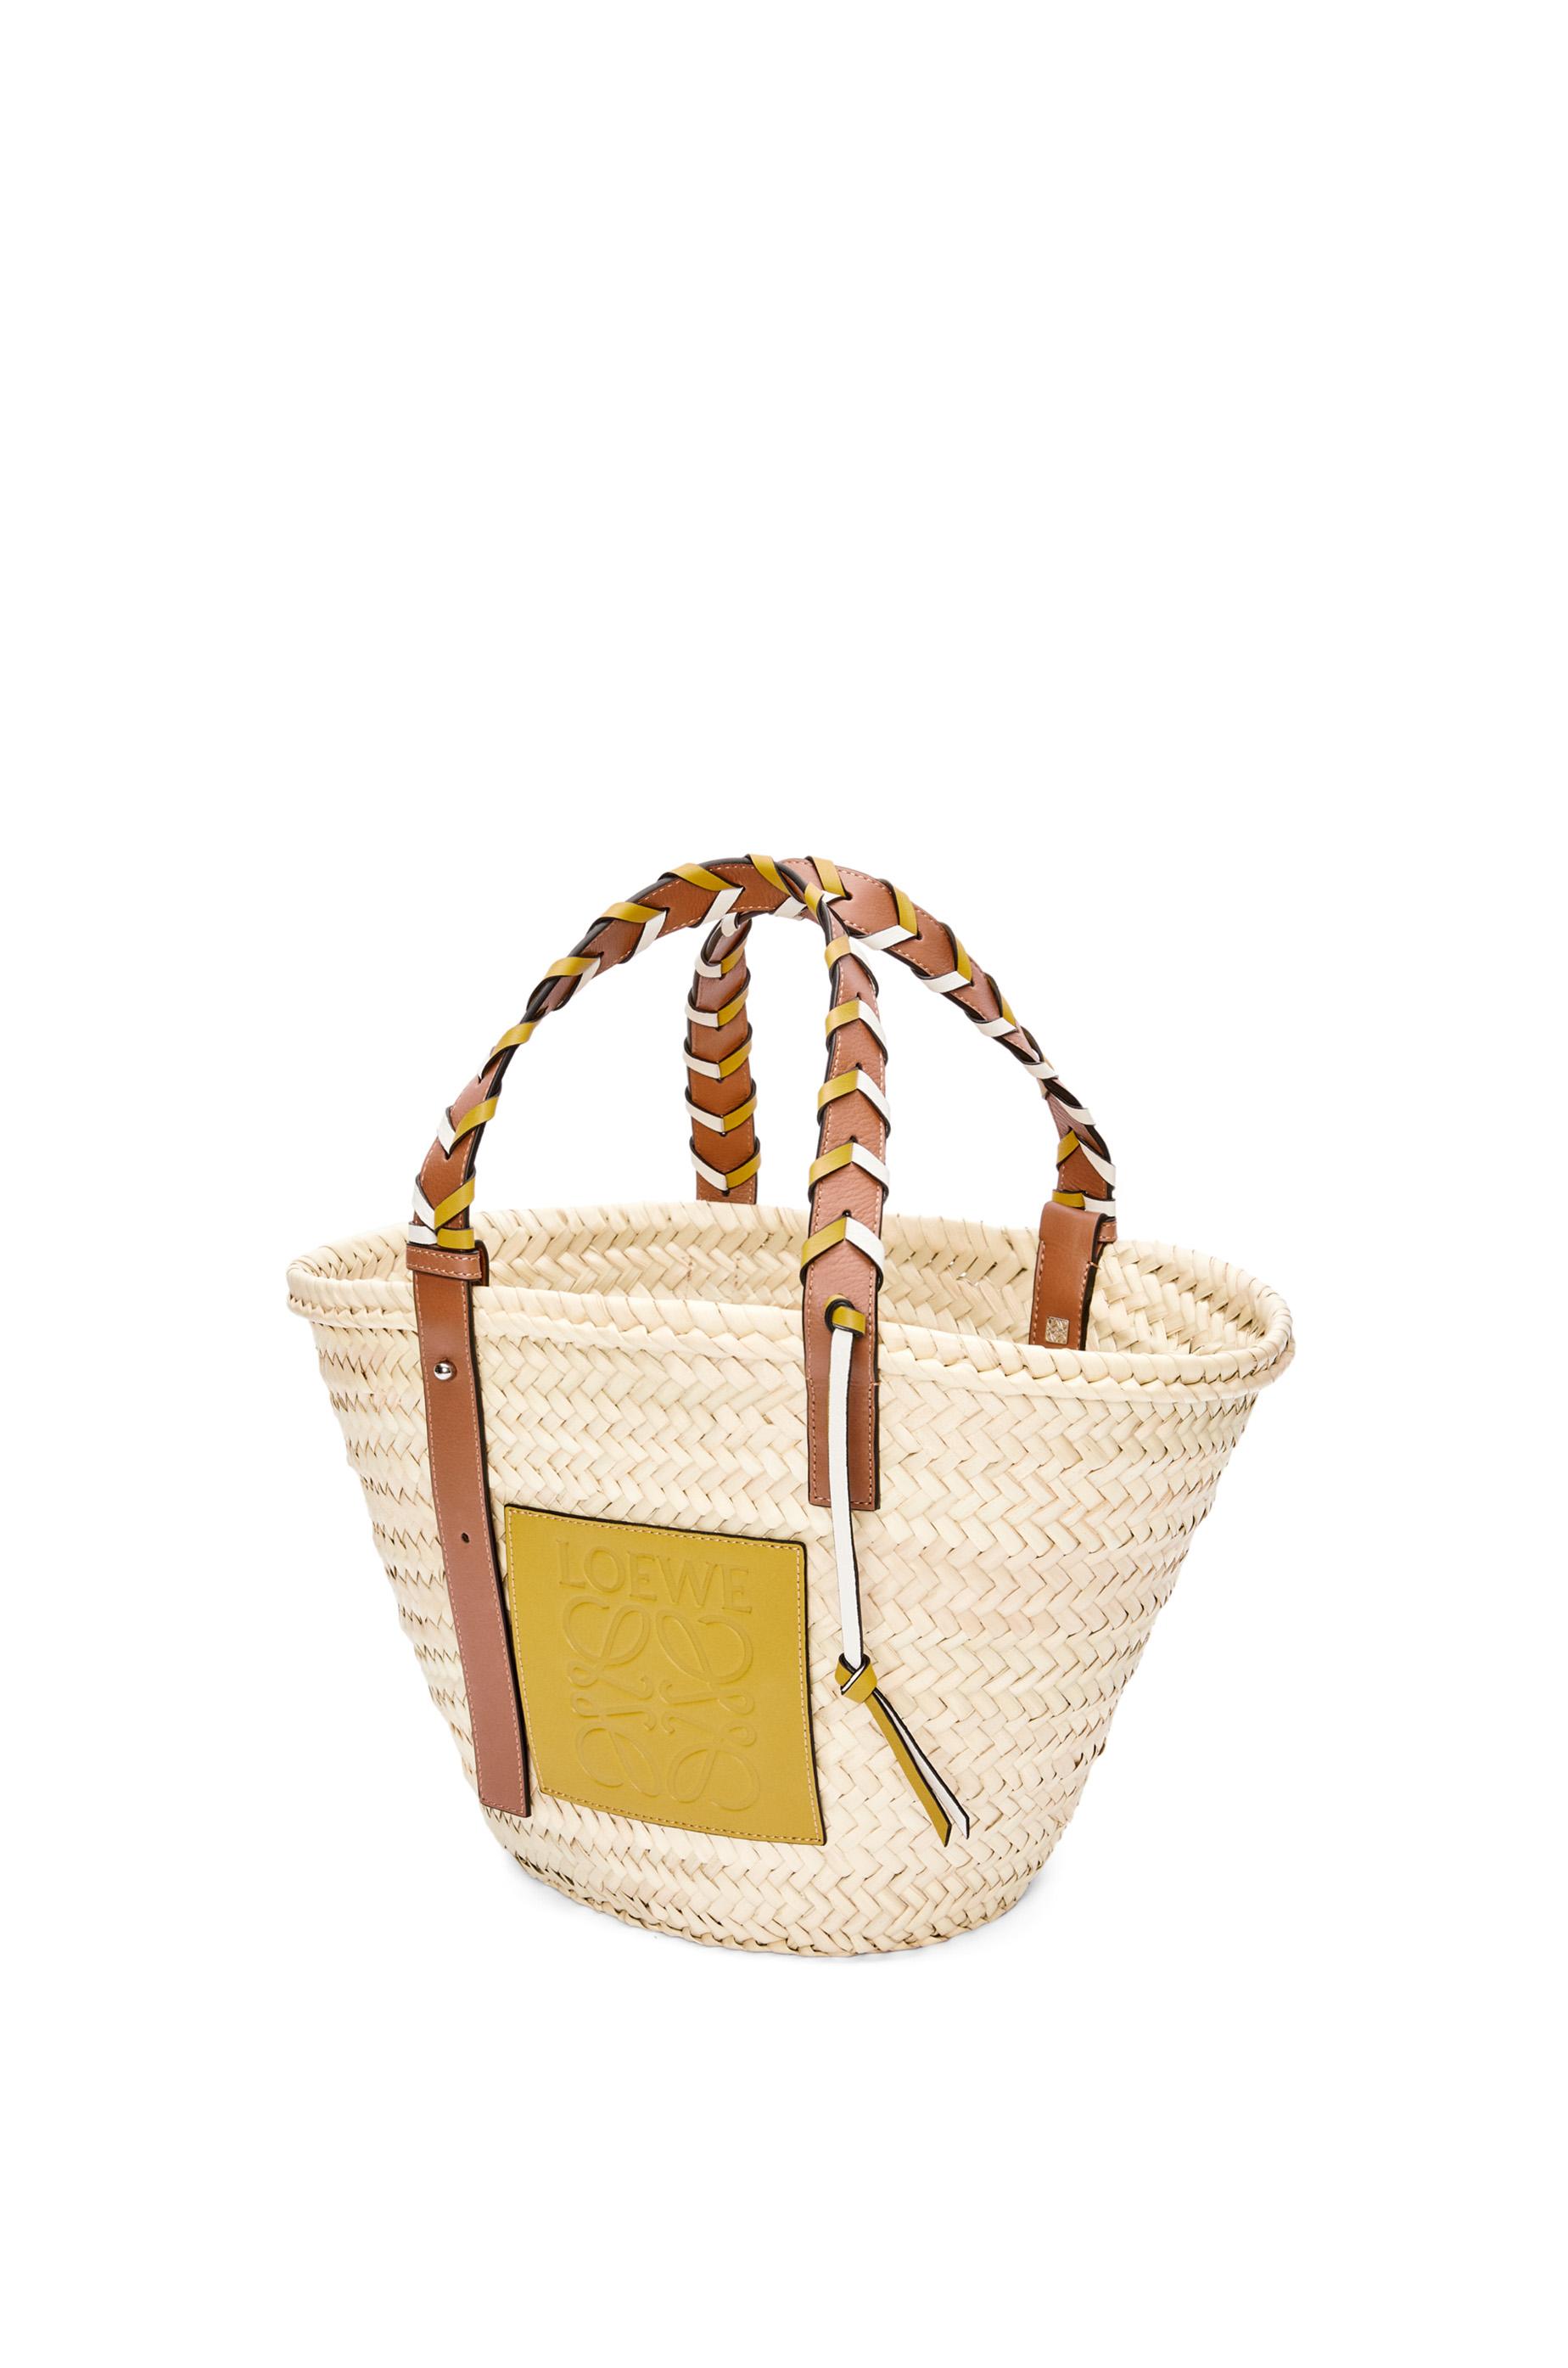 Loewe X Paula's Ibiza Small Palm Leaf Basket Tote Bag in Blue